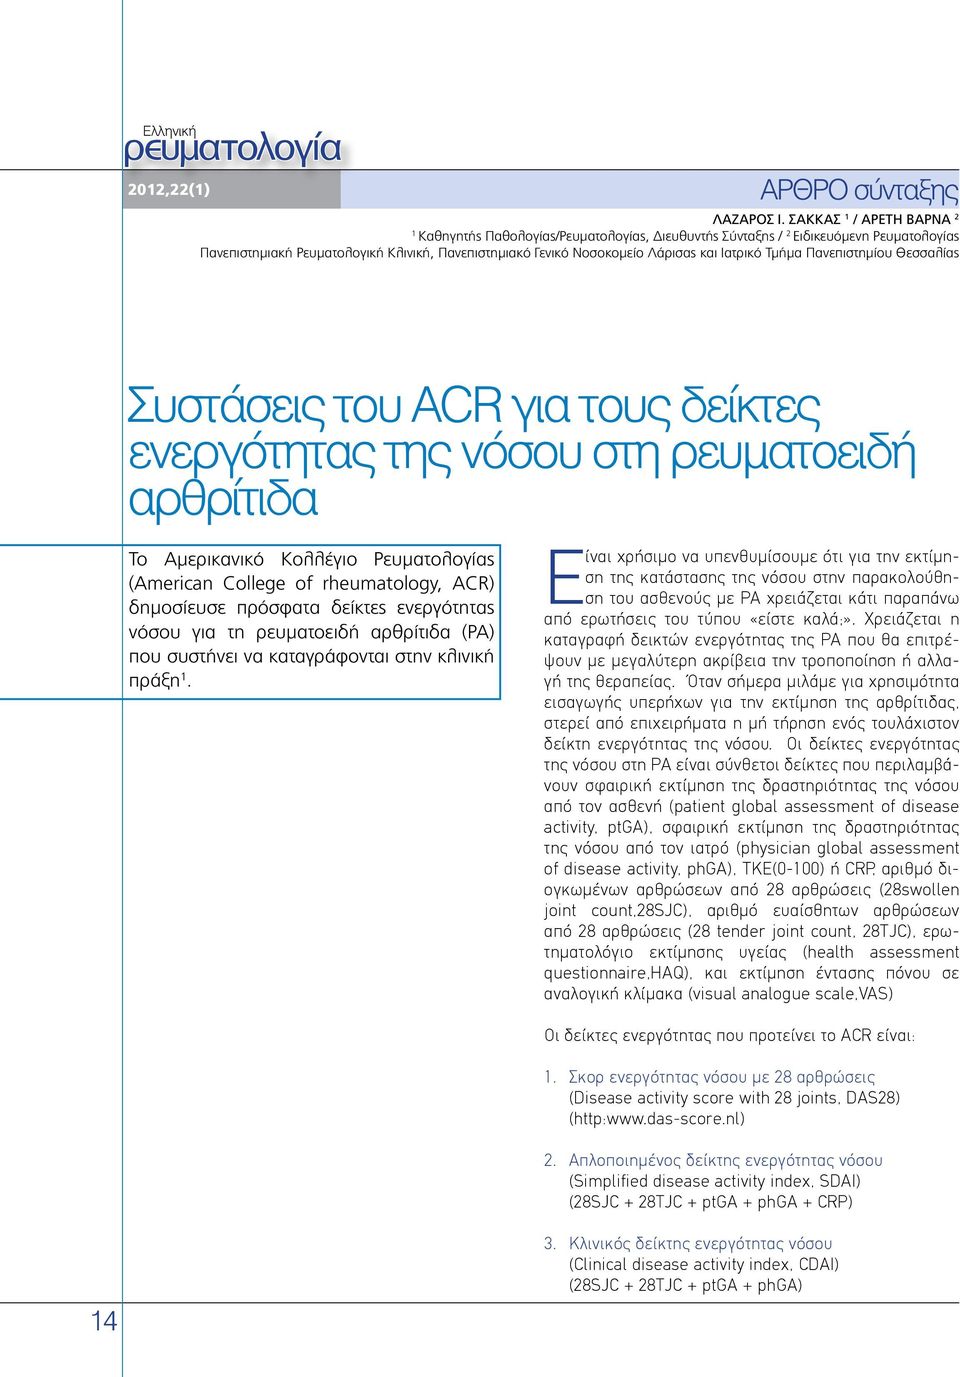 Ιατρικό Τμήμα Πανεπιστημίου Θεσσαλίας Συστάσεις του ACR για τους δείκτες ενεργότητας της νόσου στη ρευματοειδή αρθρίτιδα To Αμερικανικό Κολλέγιο Ρευματολογίας (American College of rheumatology, ACR)